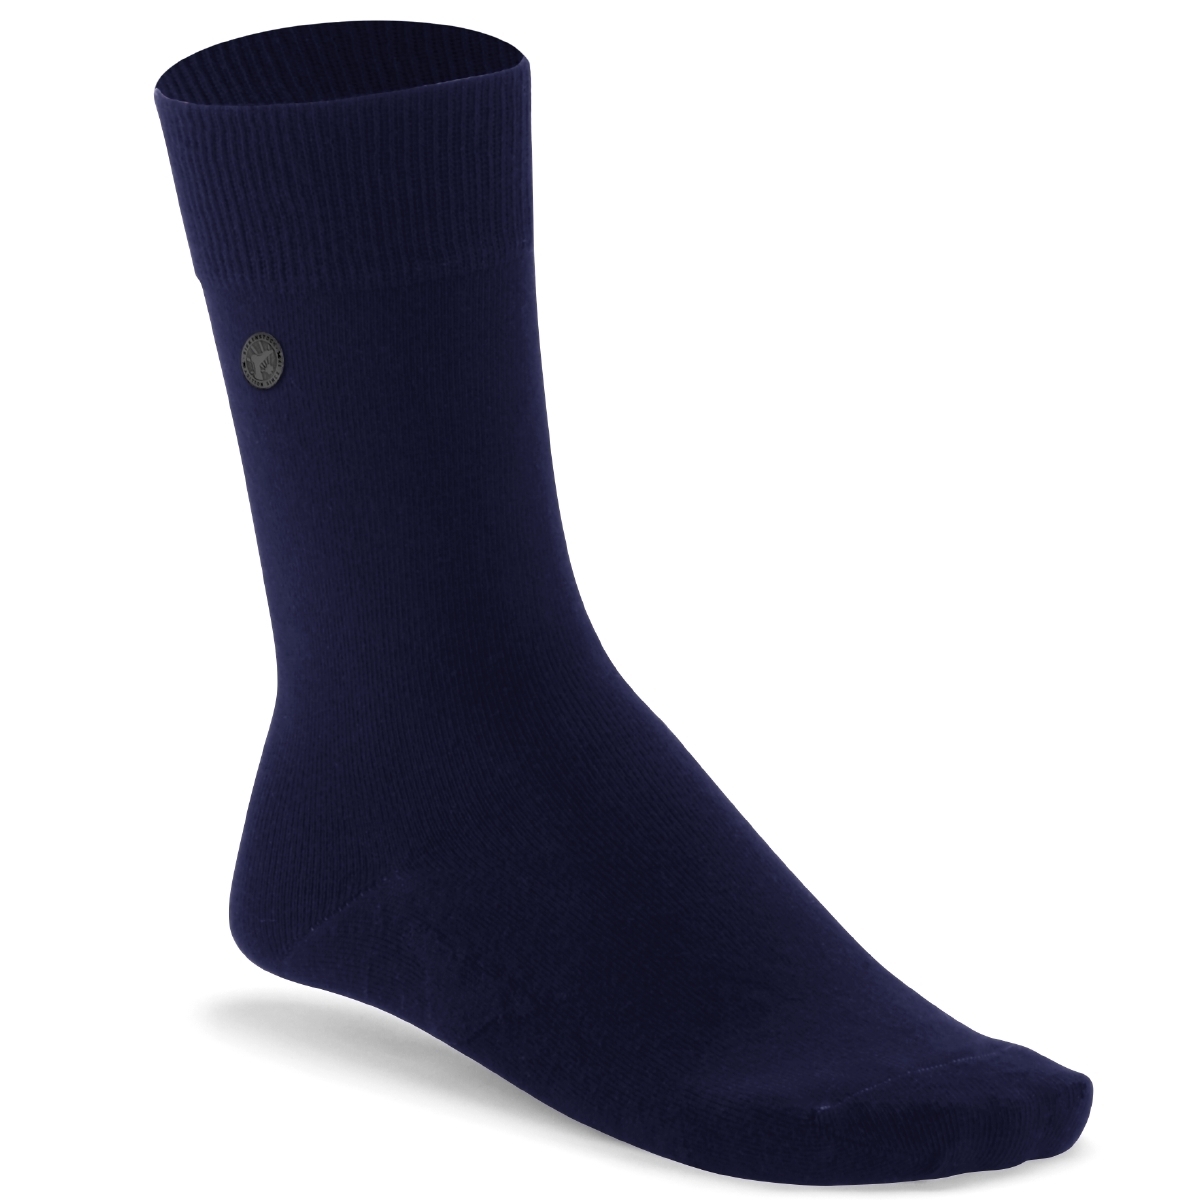 Birkenstock Cotton Sole Socken blau